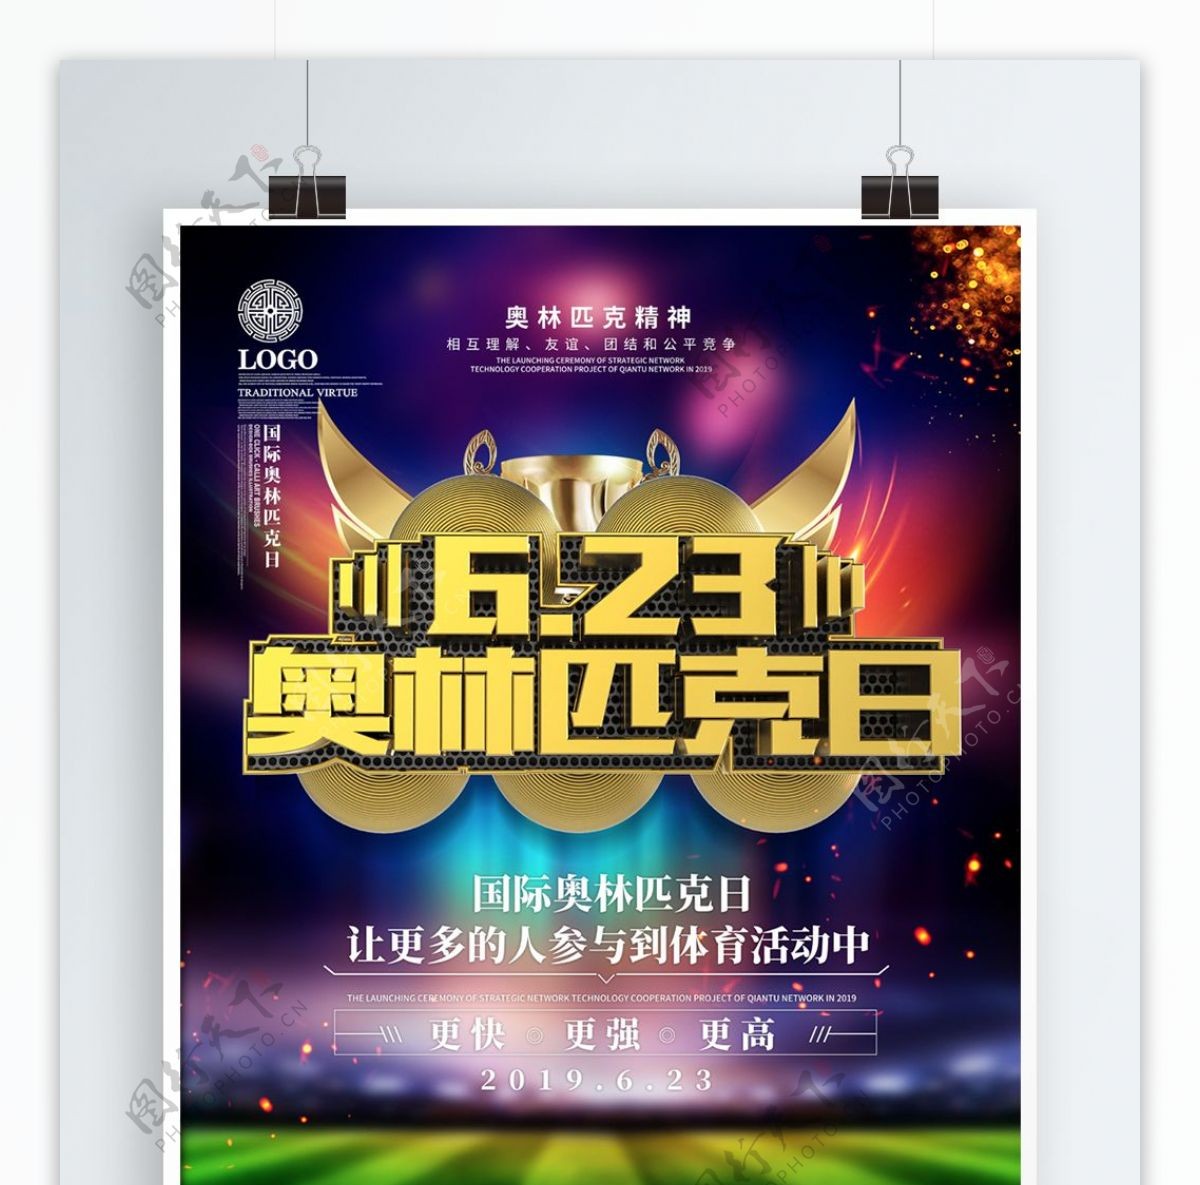 C4D酷炫奥林匹克日宣传海报